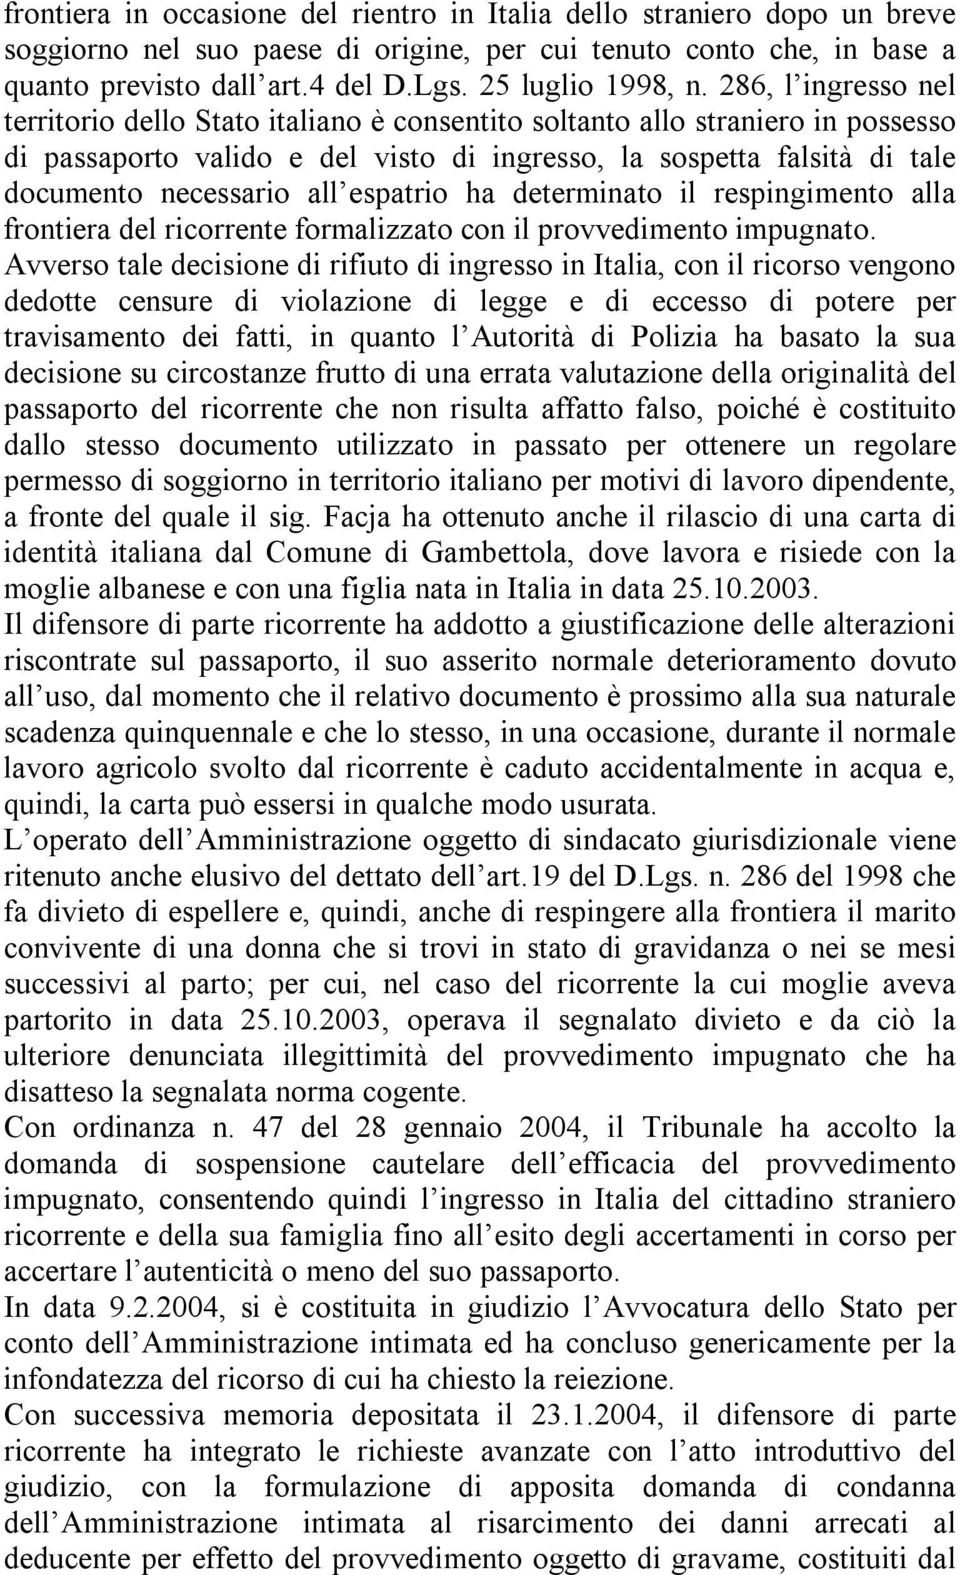 286, l ingresso nel territorio dello Stato italiano è consentito soltanto allo straniero in possesso di passaporto valido e del visto di ingresso, la sospetta falsità di tale documento necessario all